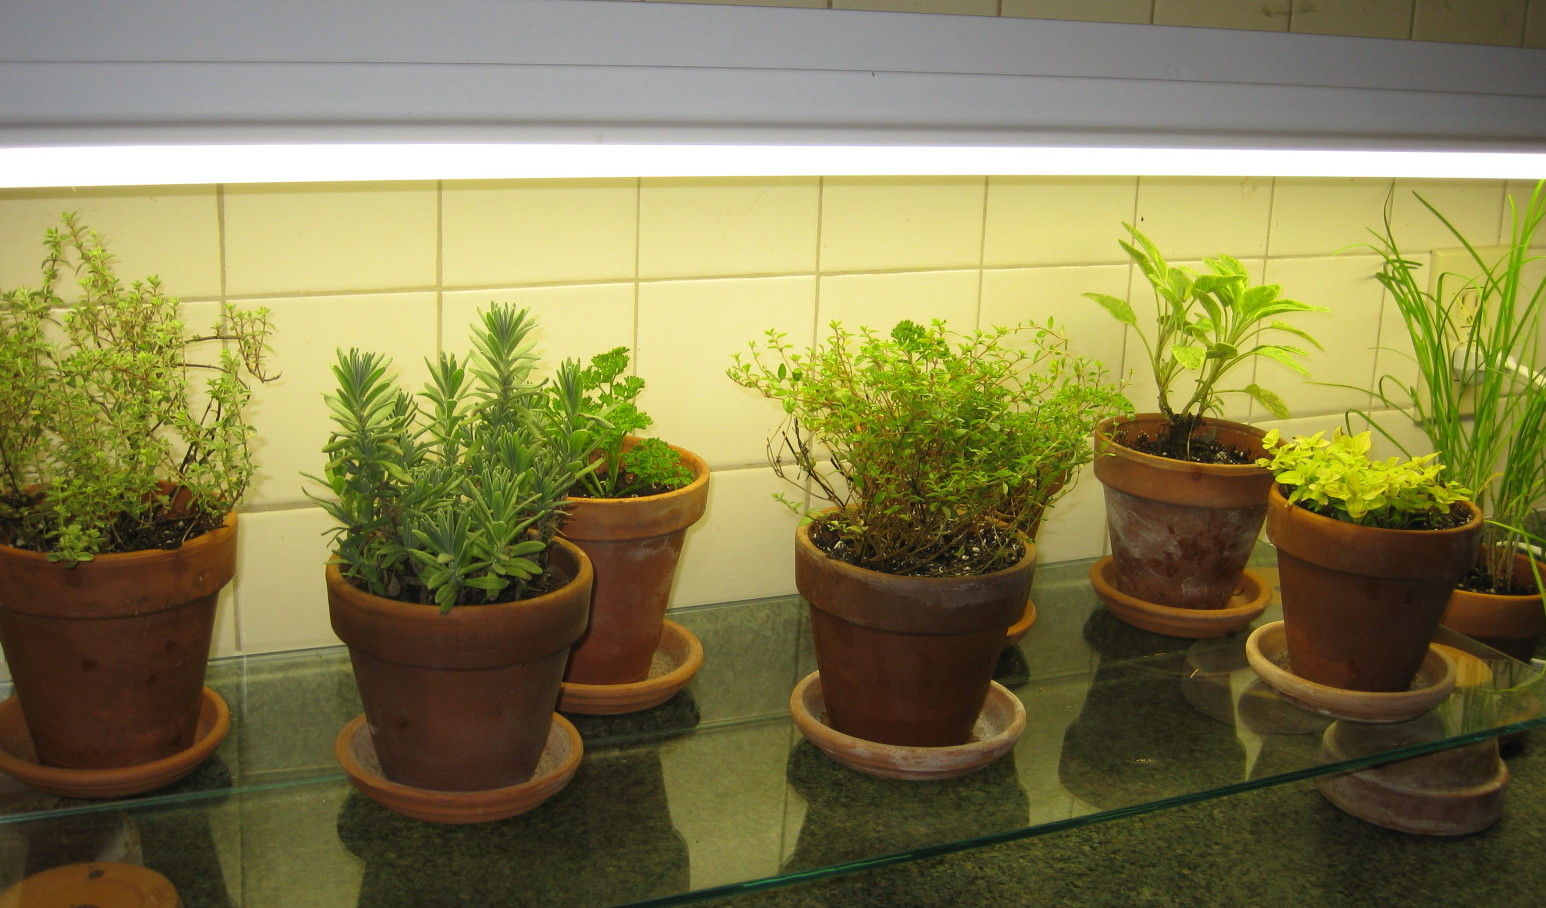 Ha növénymegvilágításra szánt fénycsövet teszünk a konyhapult feletti lámpába, máris növénybe borulhatnak a sötét konyhák is!